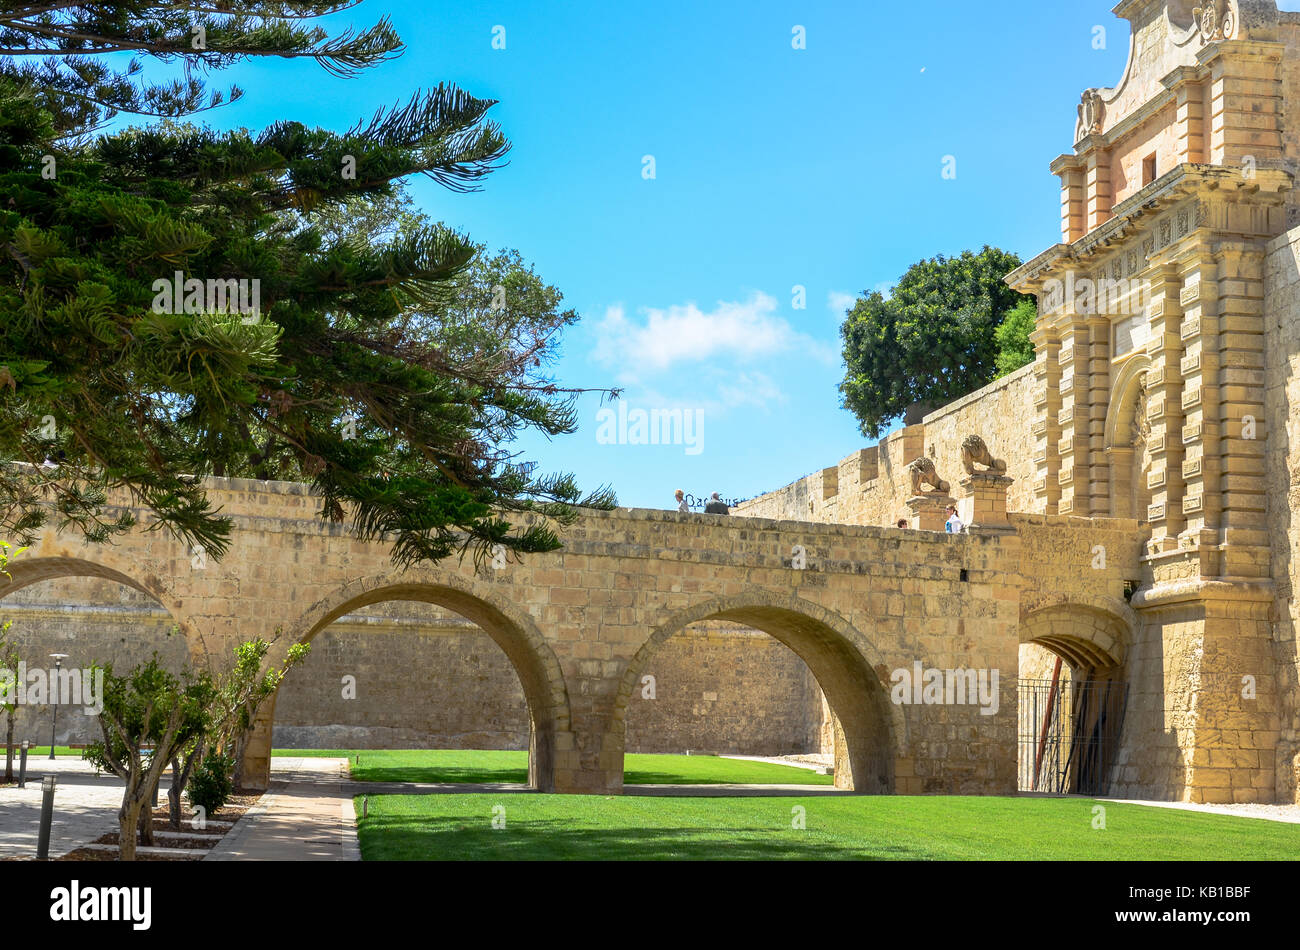 Eingang der historischen Altstadt von Mdina auf Malta. Mdina bietet die Einstellung für populäre Kultur, einschließlich das Spiel der Throne Kings Landing Stockfoto